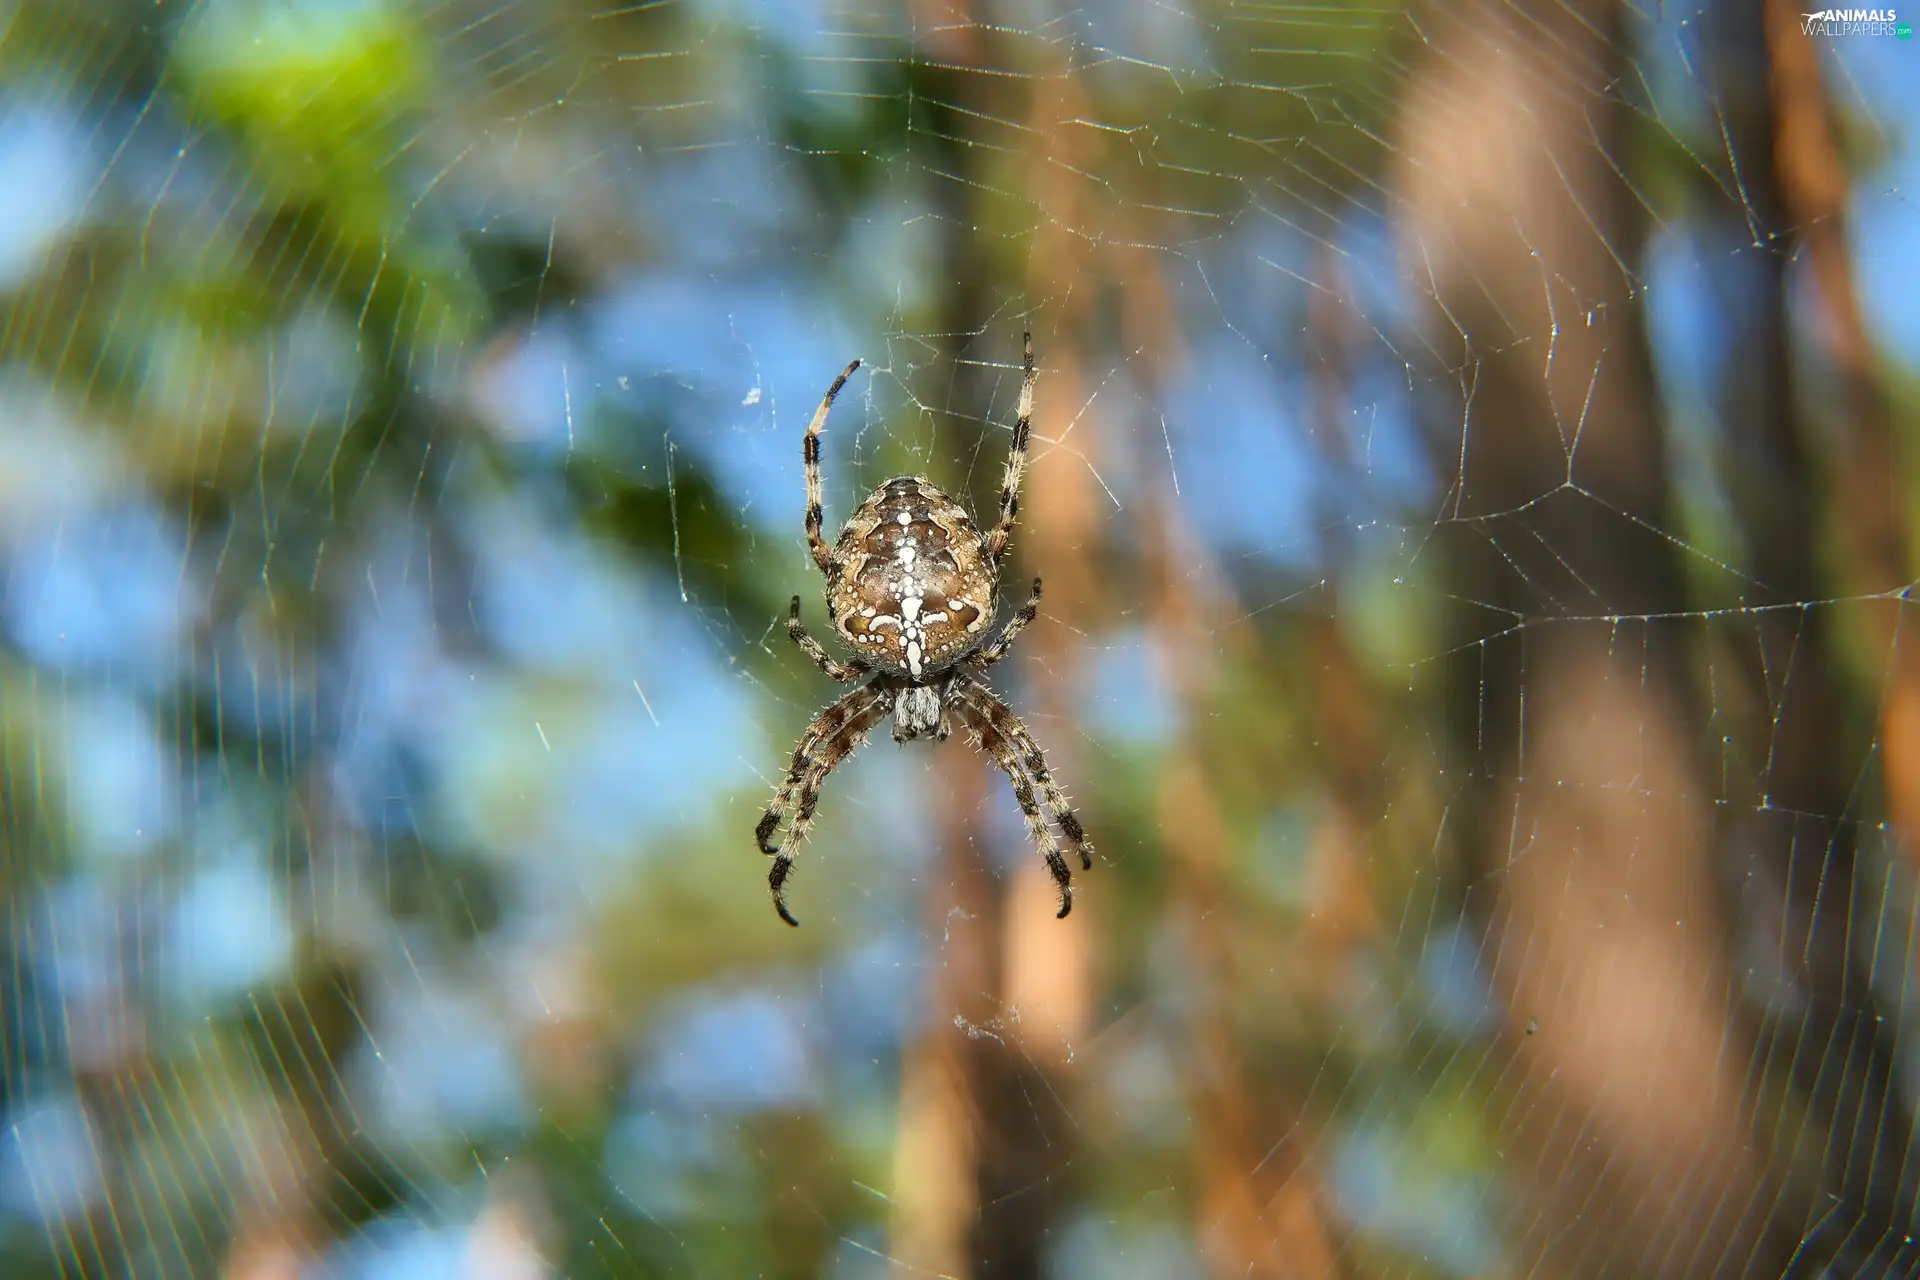 female, Spider, Garden Spider